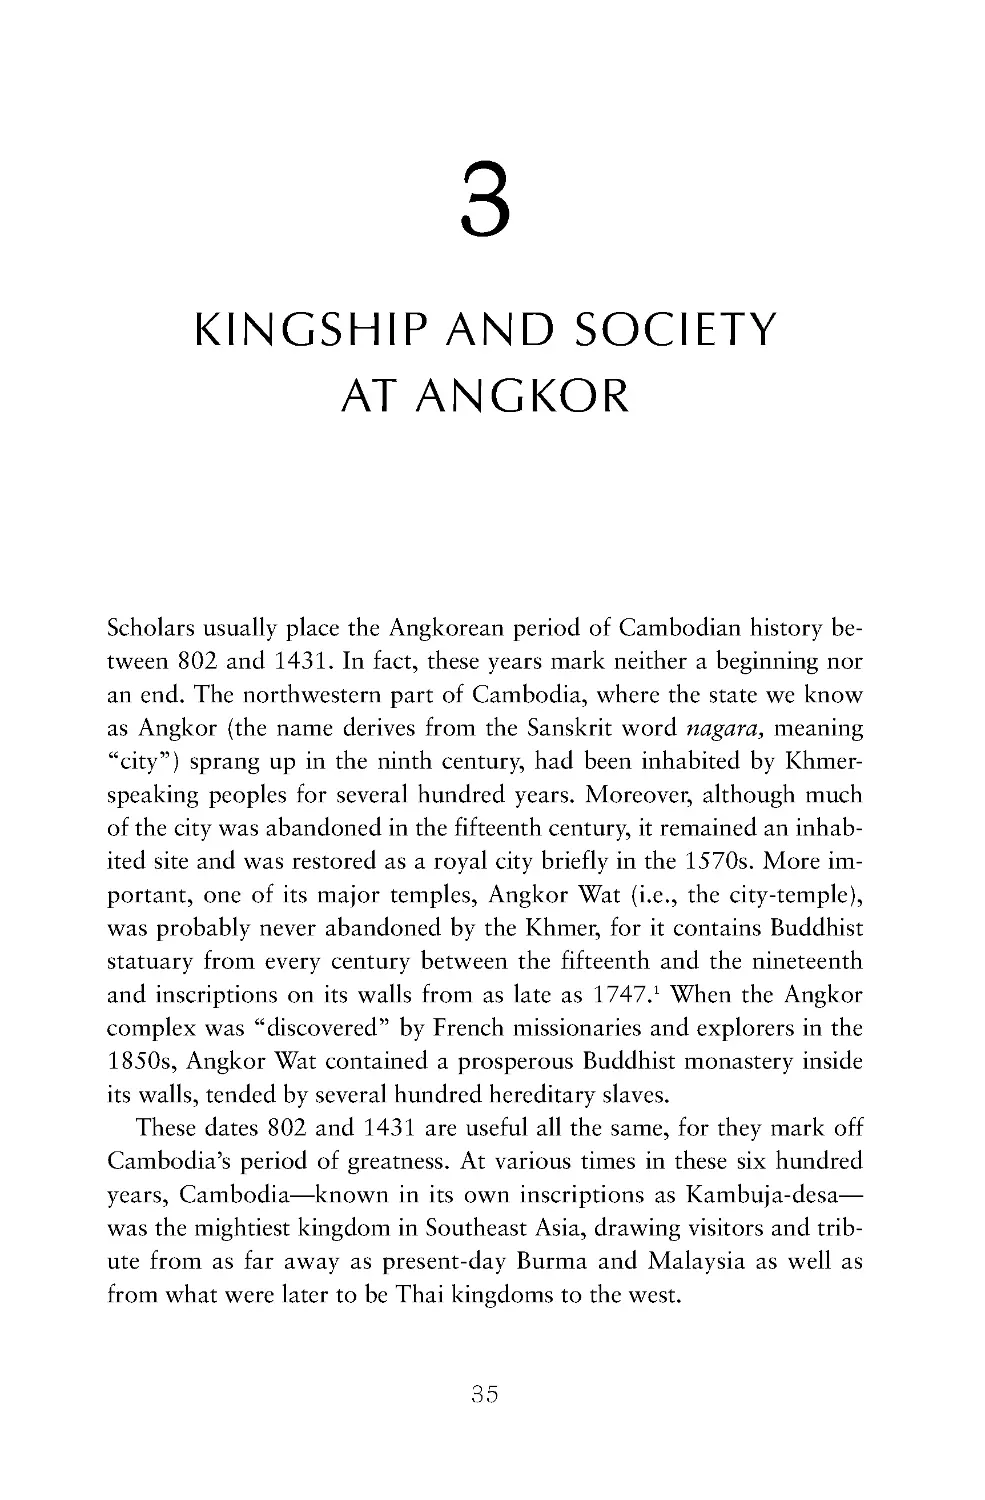 3. Kingship and Society at Angkor